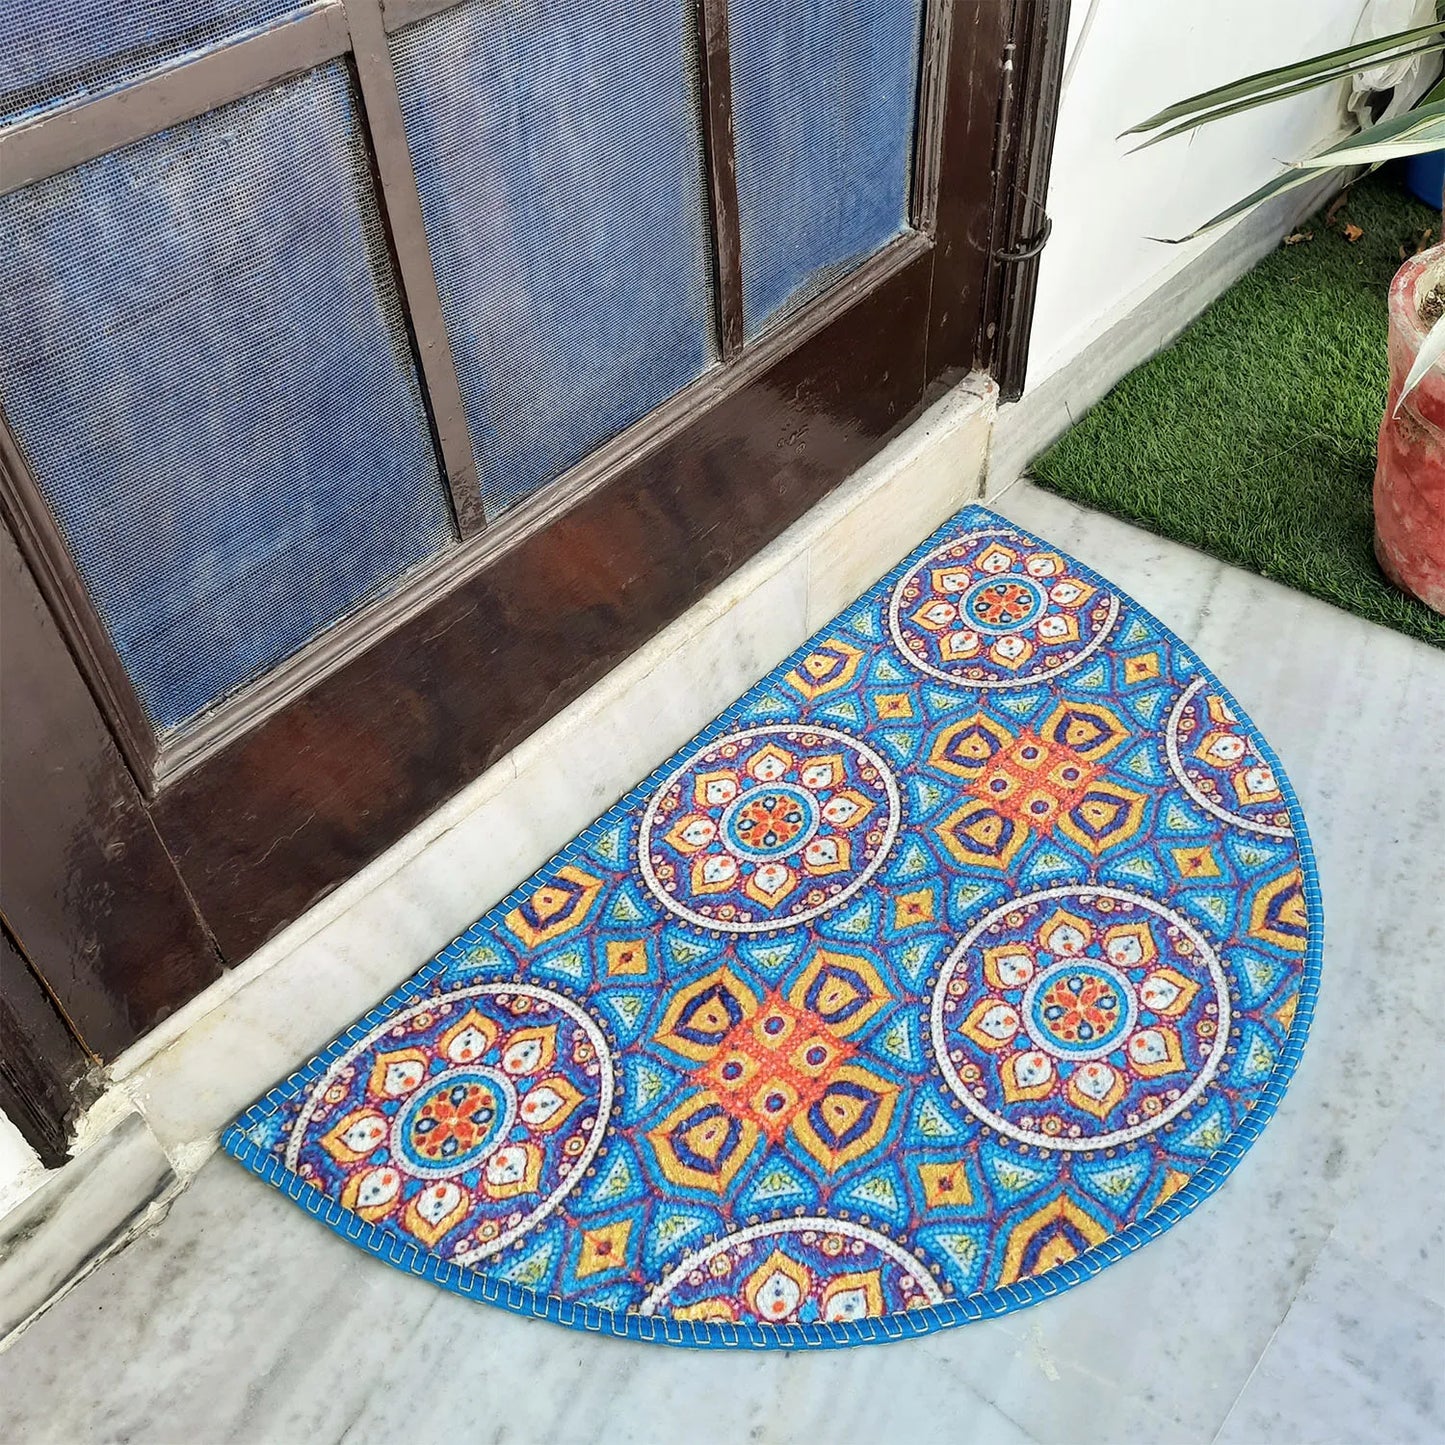 Avioni Home Floor Mats in Beautiful Moroccan Design – Anti Slip, Durable & Washable | Outdoor & Indoor